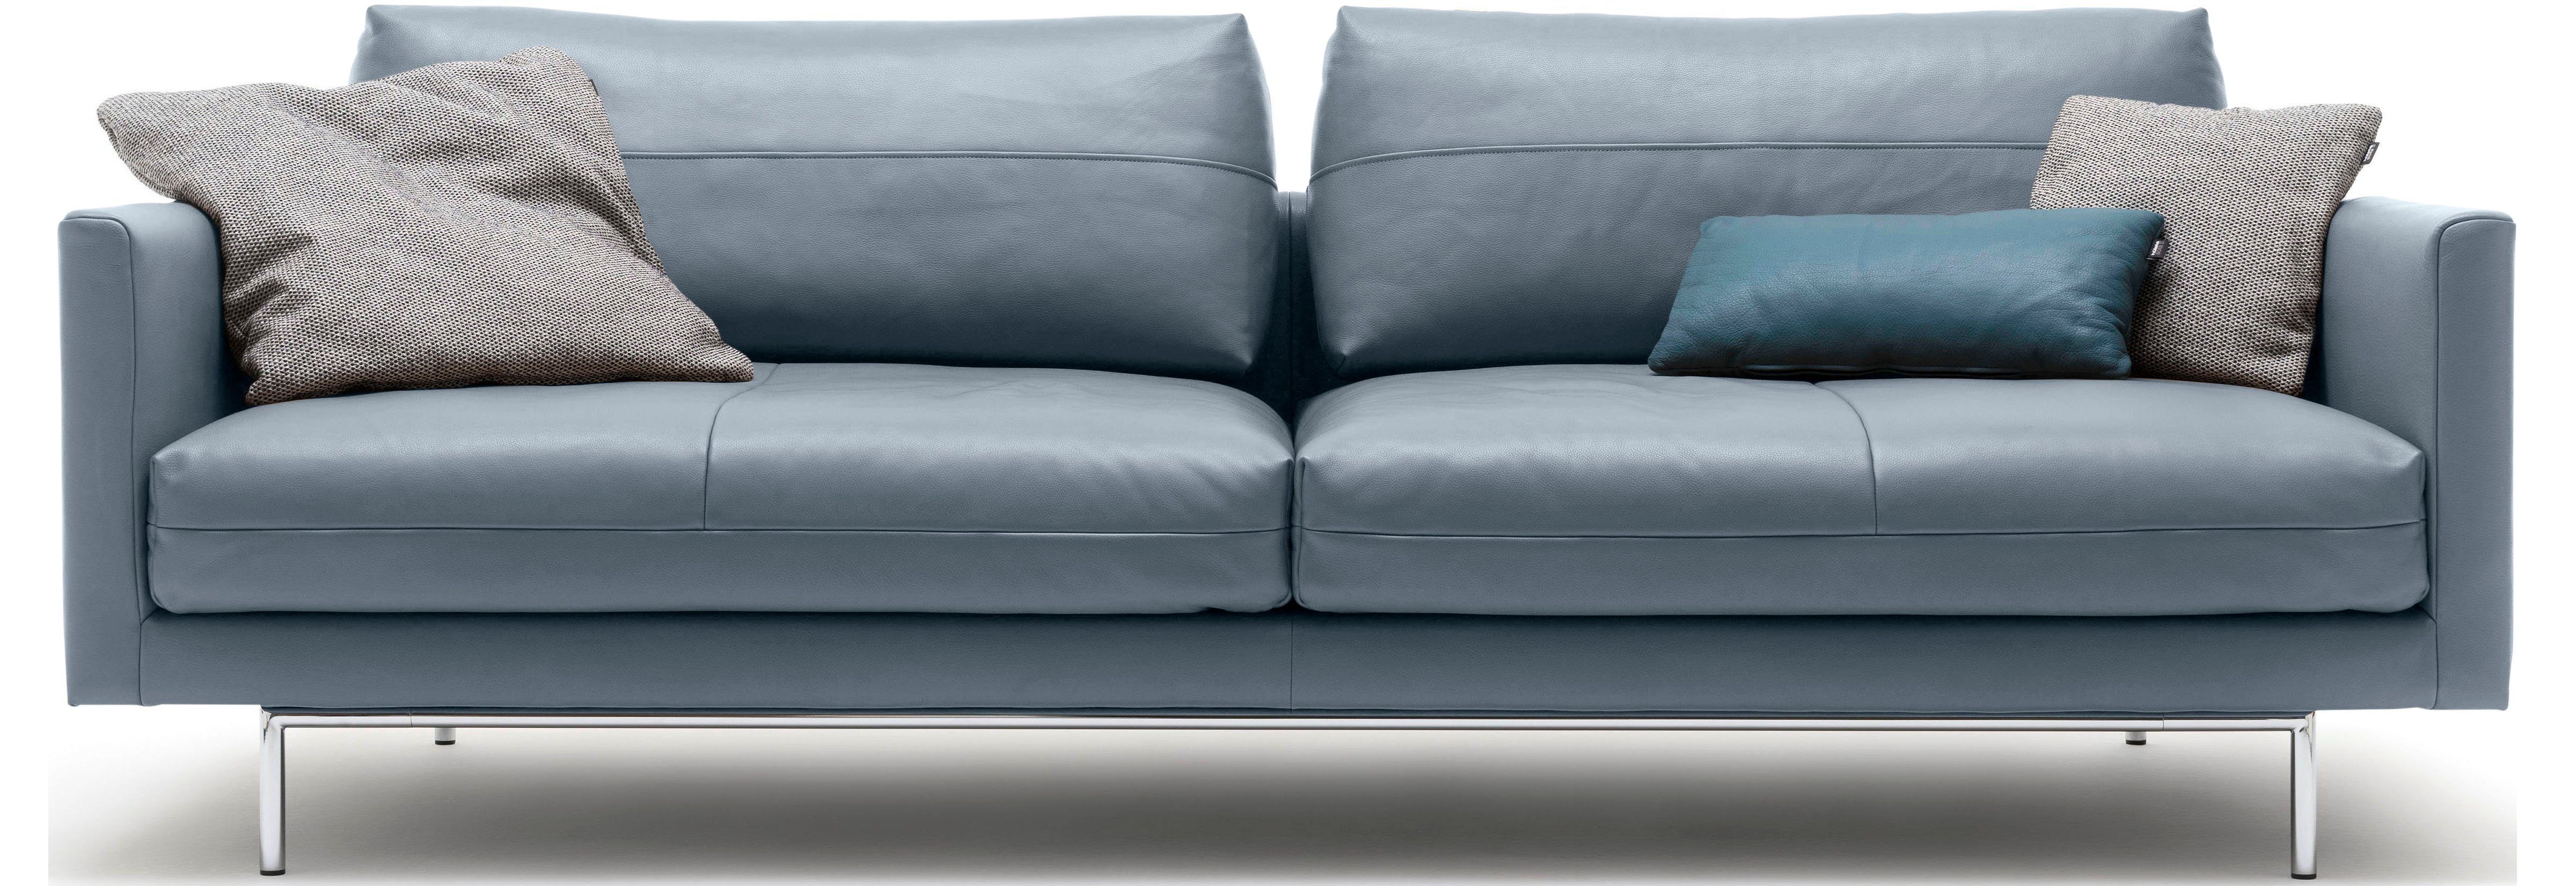 blaugrau blaugrau | 4-Sitzer hülsta sofa